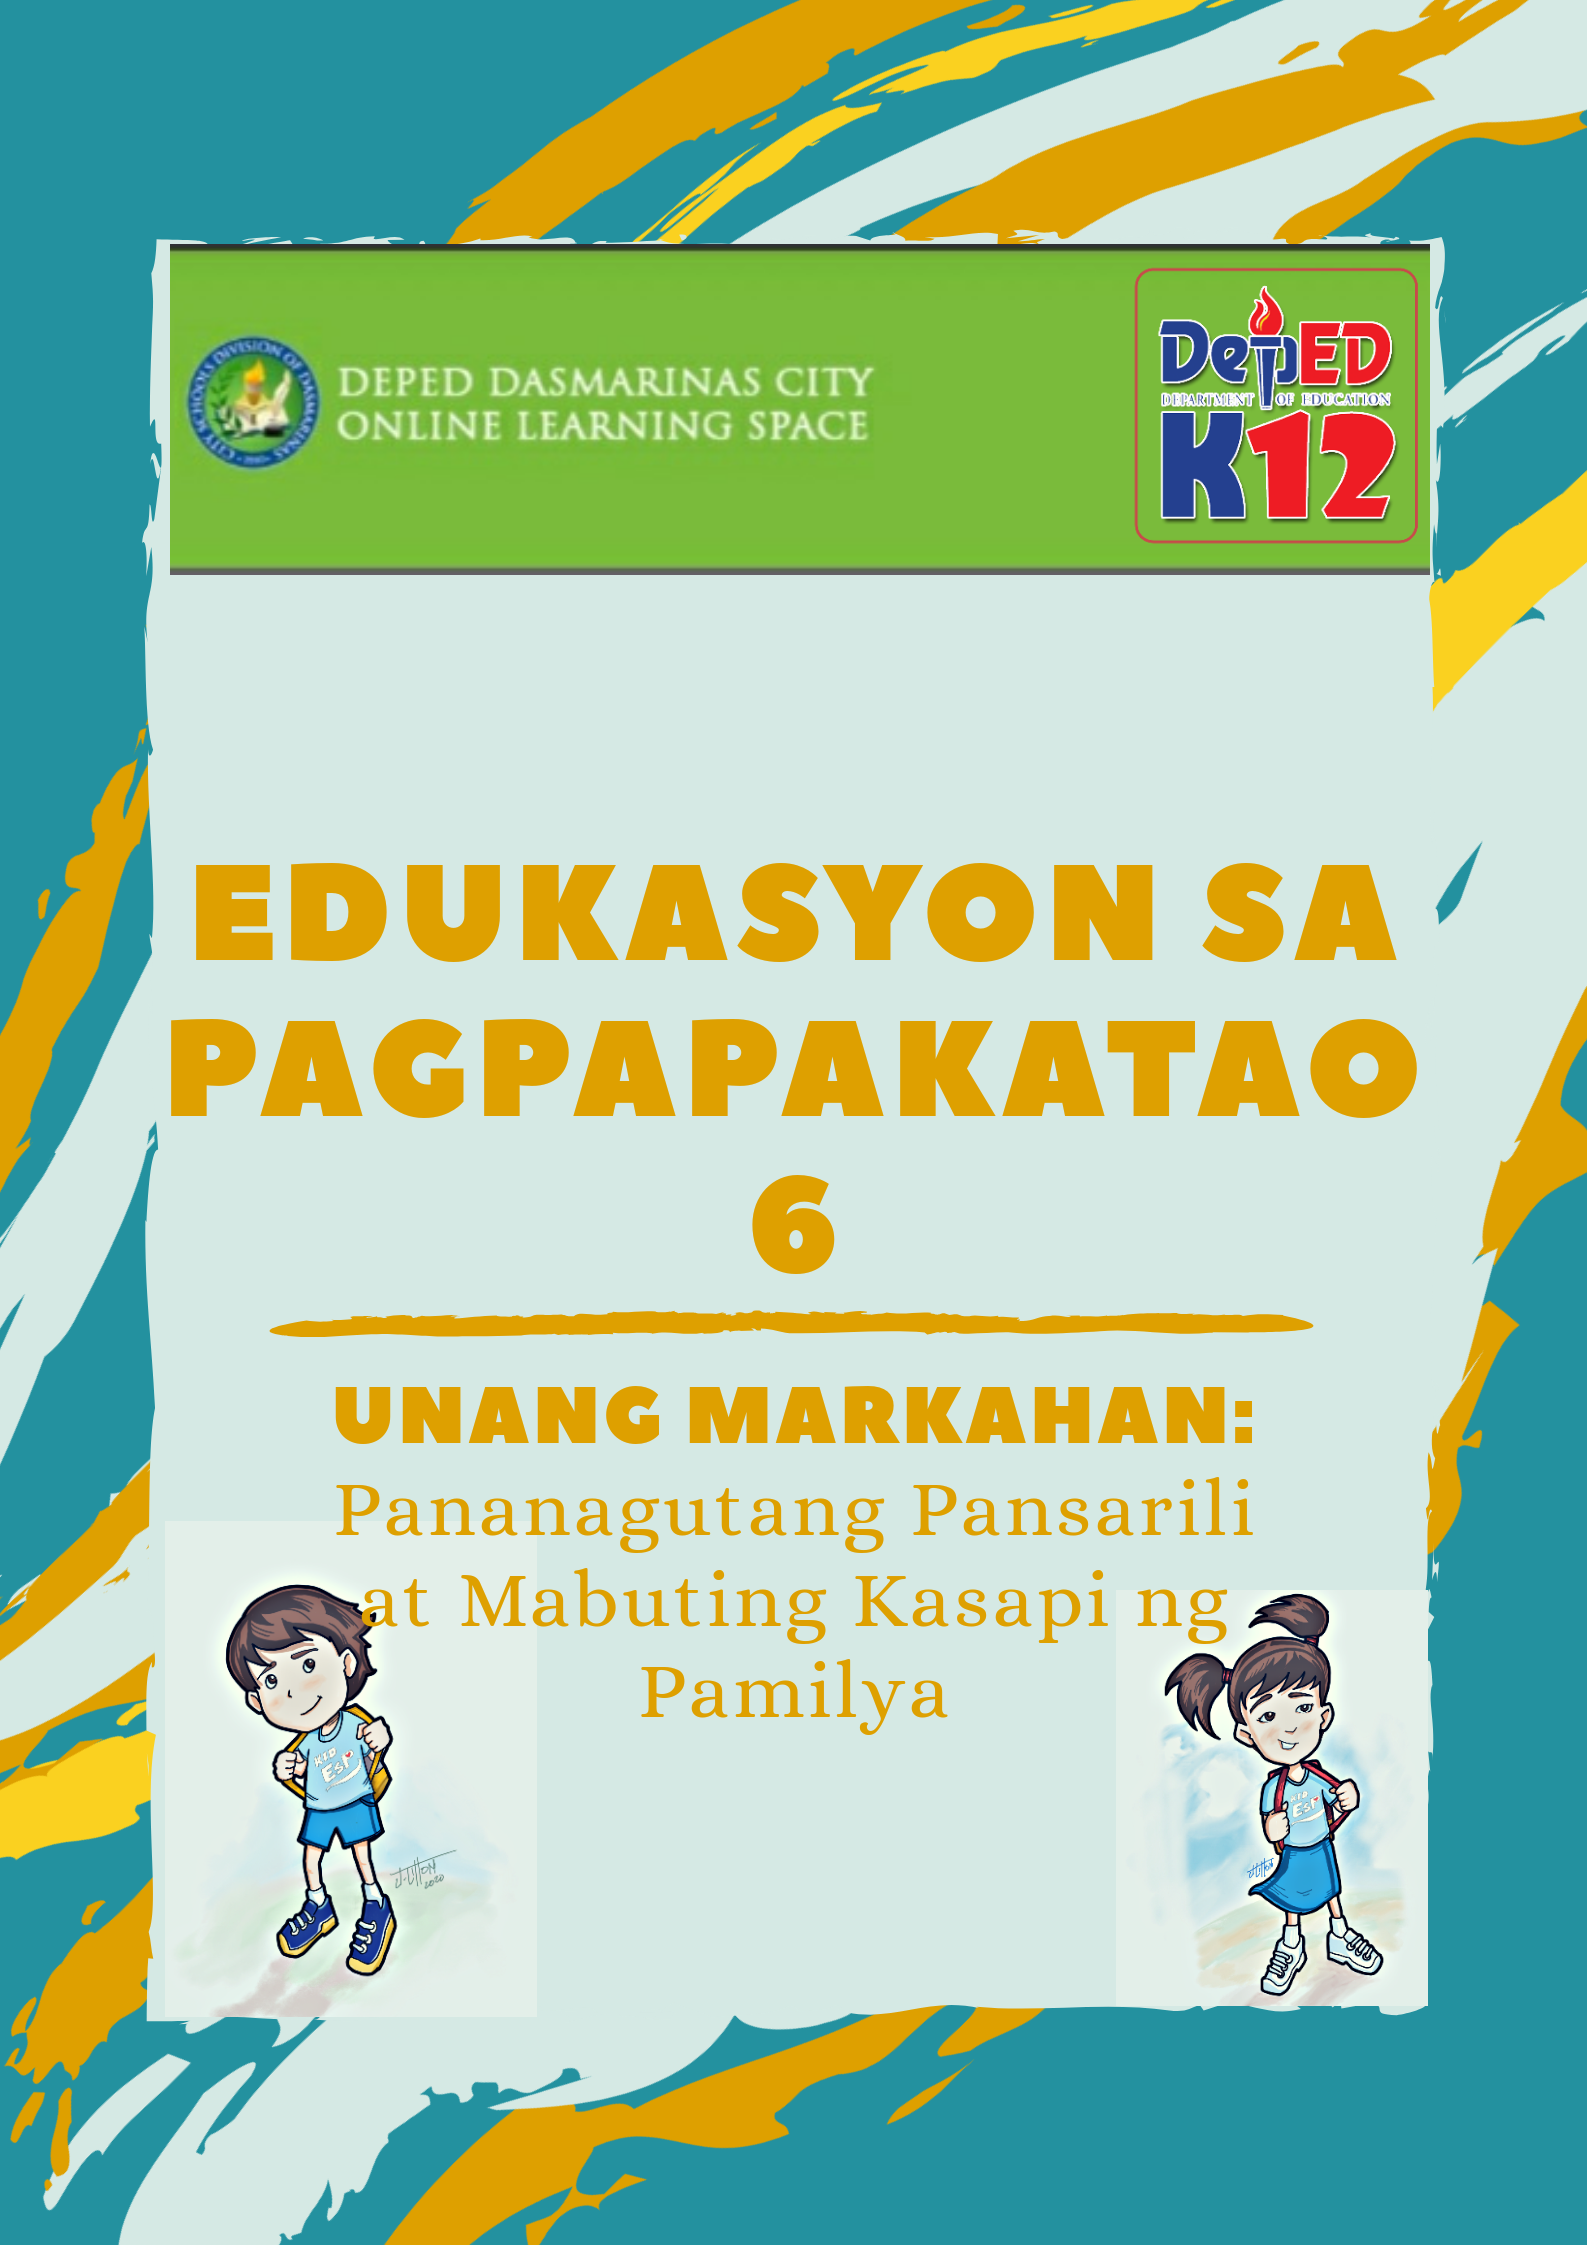 G6 - Edukasyon sa Pagpapakatao Quarter 1: Pananagutang Pansarili at Mabuting Kasapi ng Pamilya - Mr. Tandoc